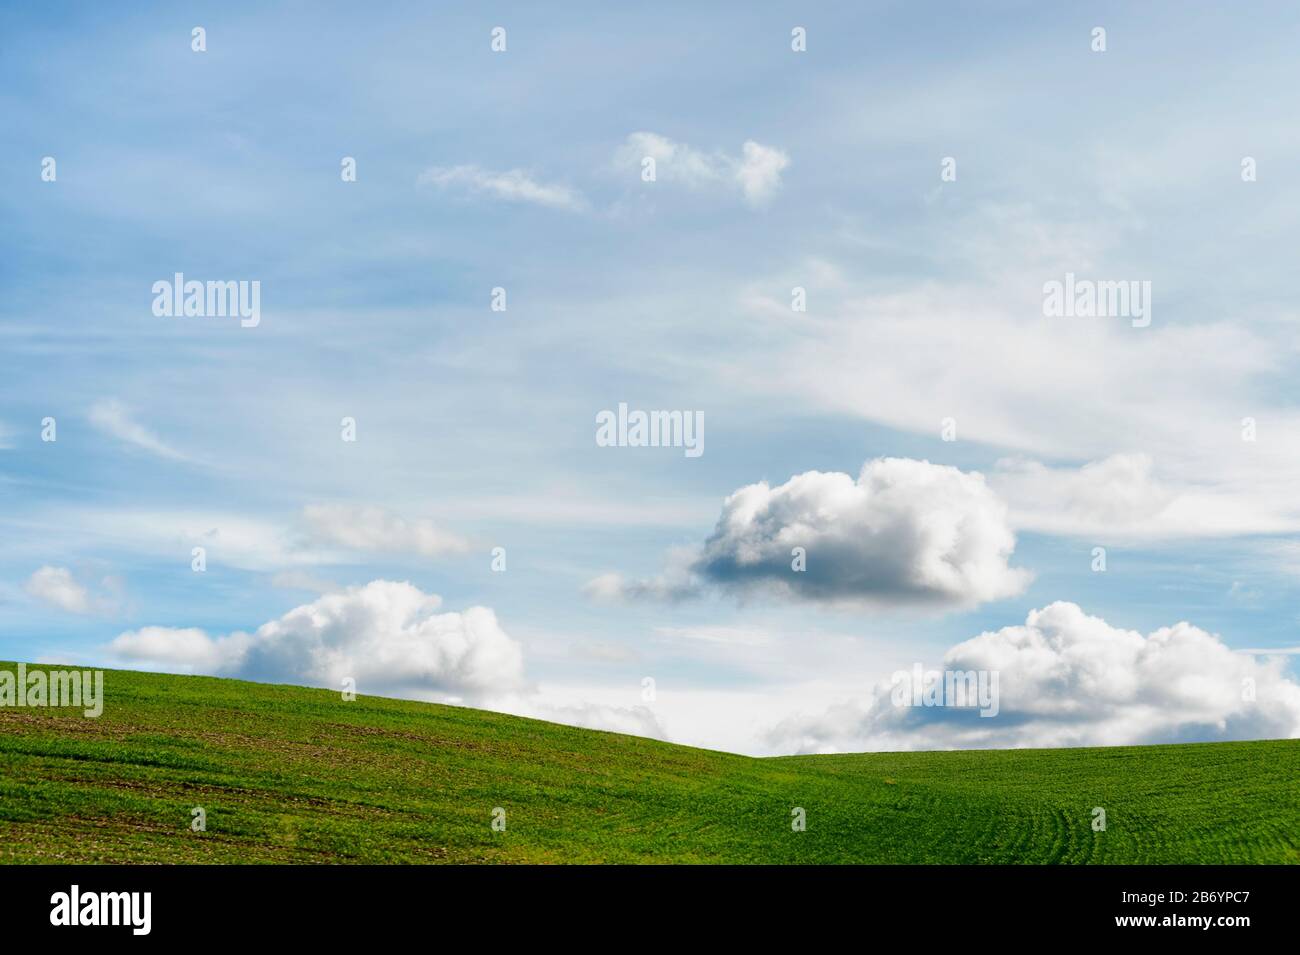 Minimalista con copyspace de colina verde rodada bajo el cielo grande con nubes iluminadas por el sol que pone. Foto de stock